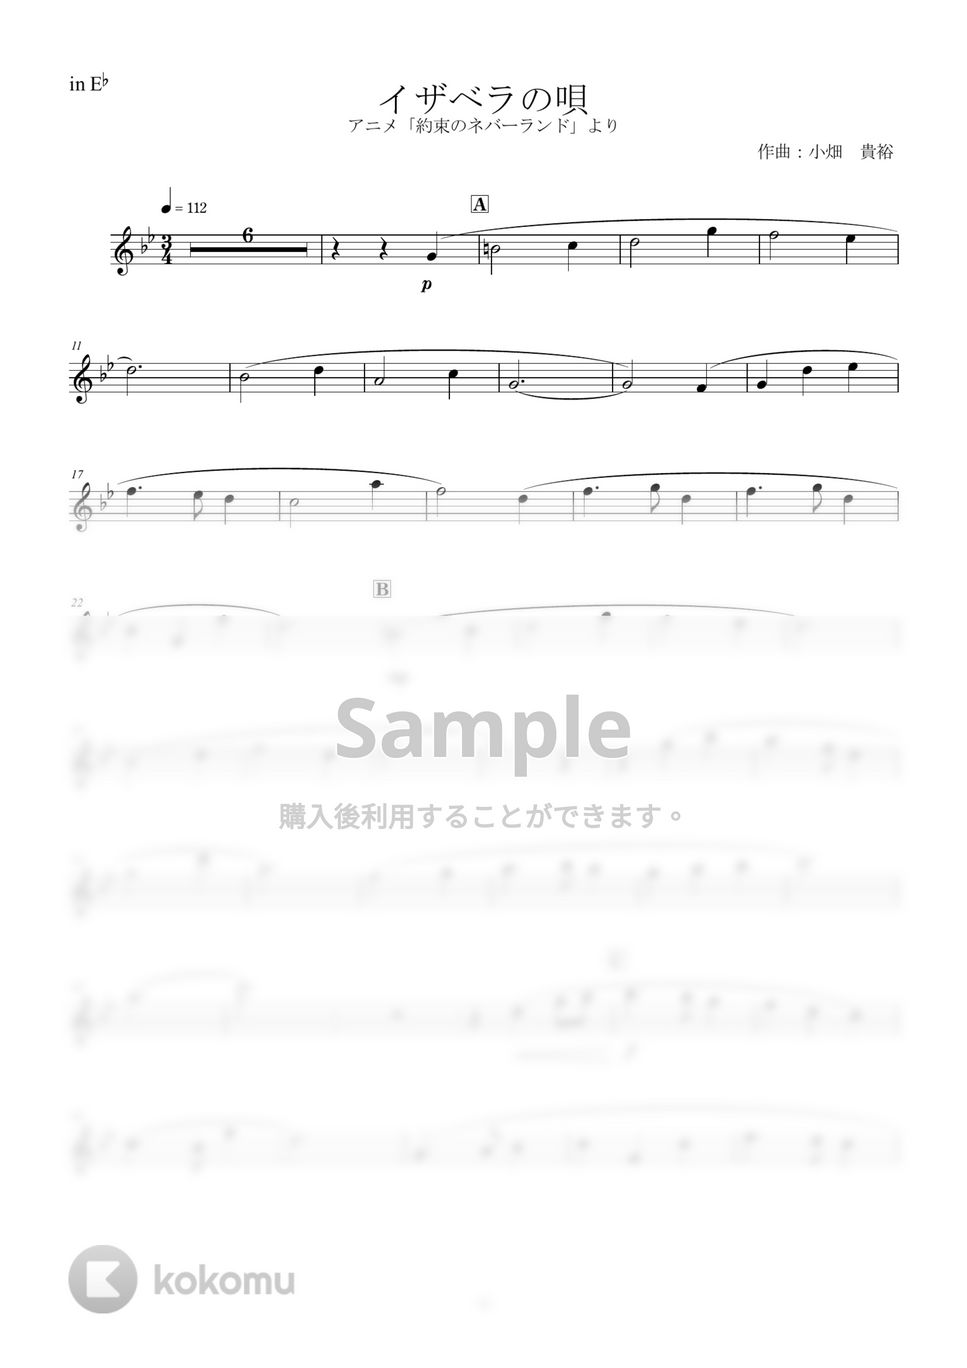 約束のネバーランド - イザベラの唄 (inE♭) by y.shiori